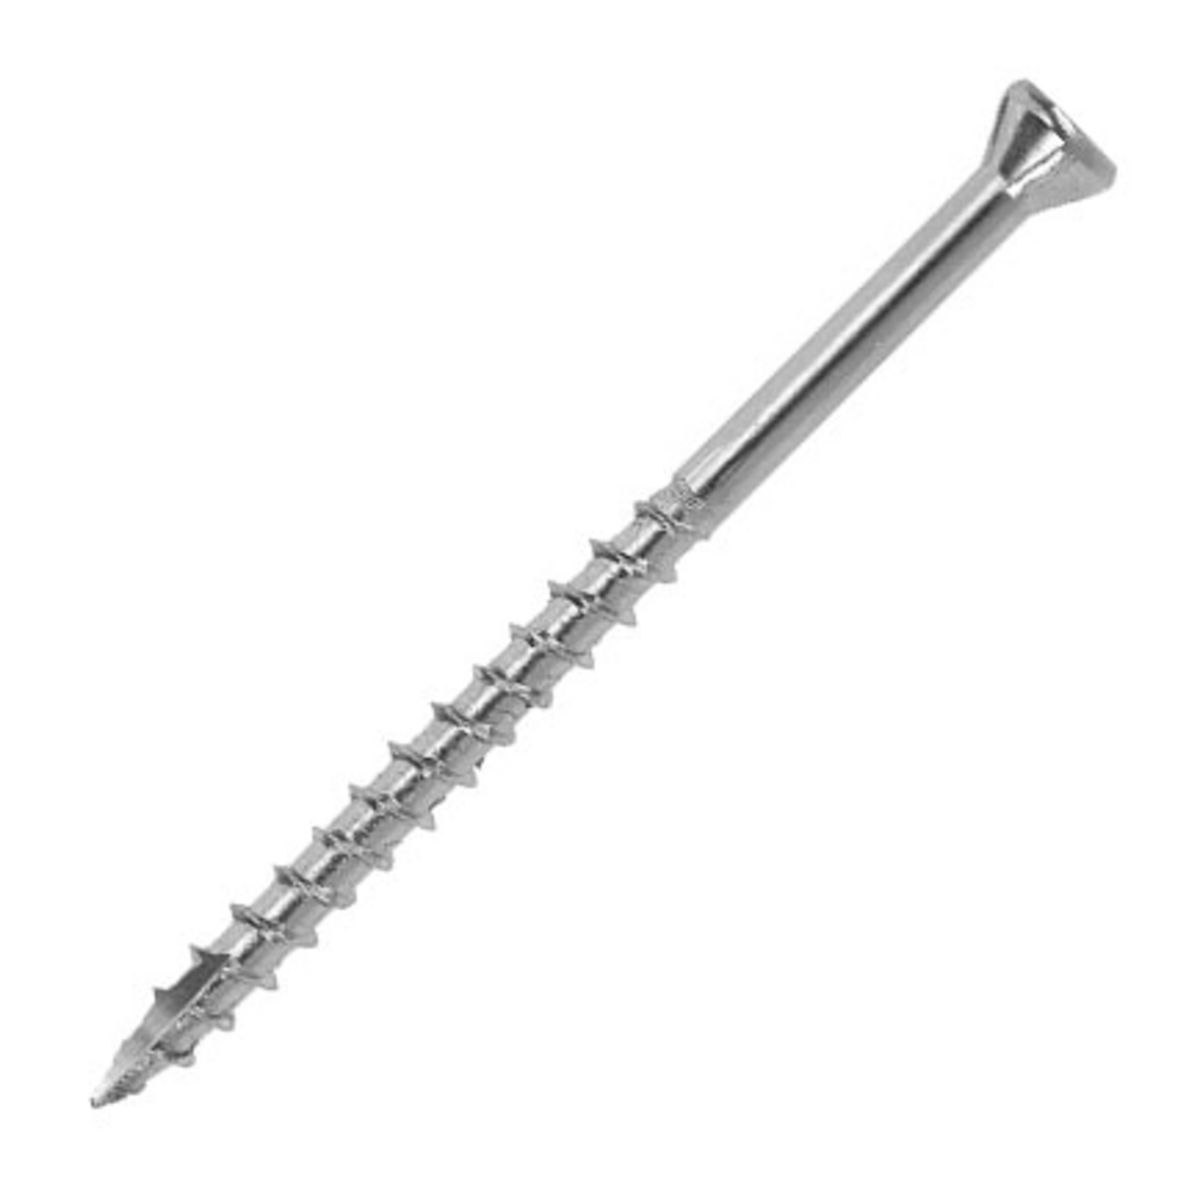 Stainless Steel screw.jpg